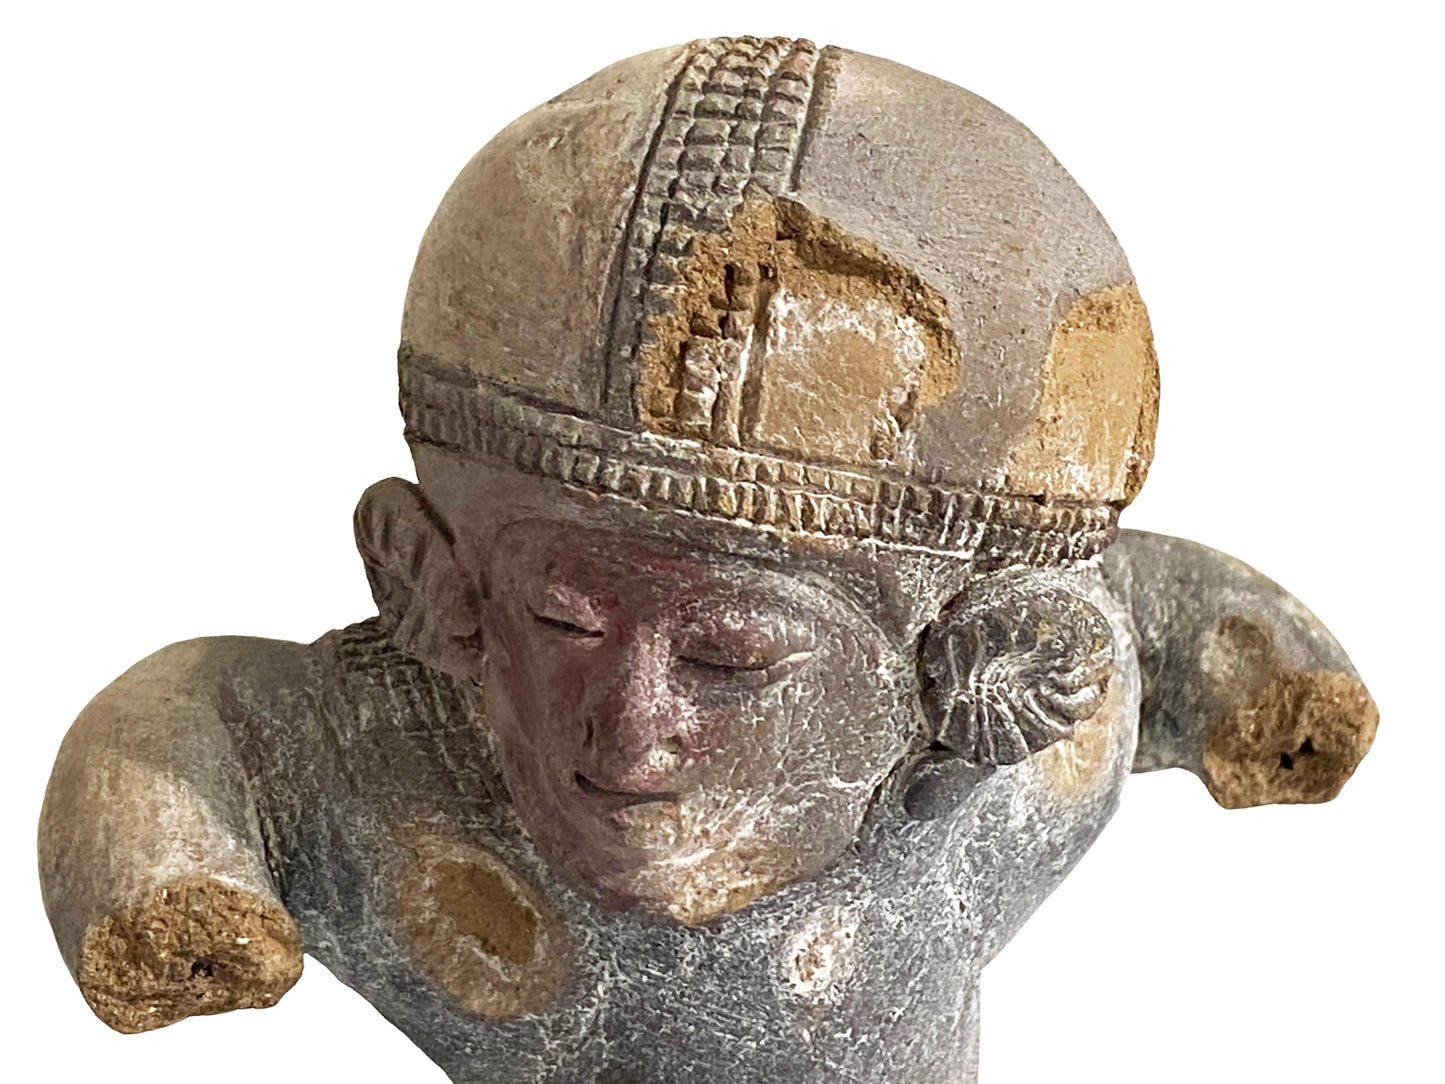 #4611 Rare Pre-Columbian - Jama Coaque Male Figure W/Helmet